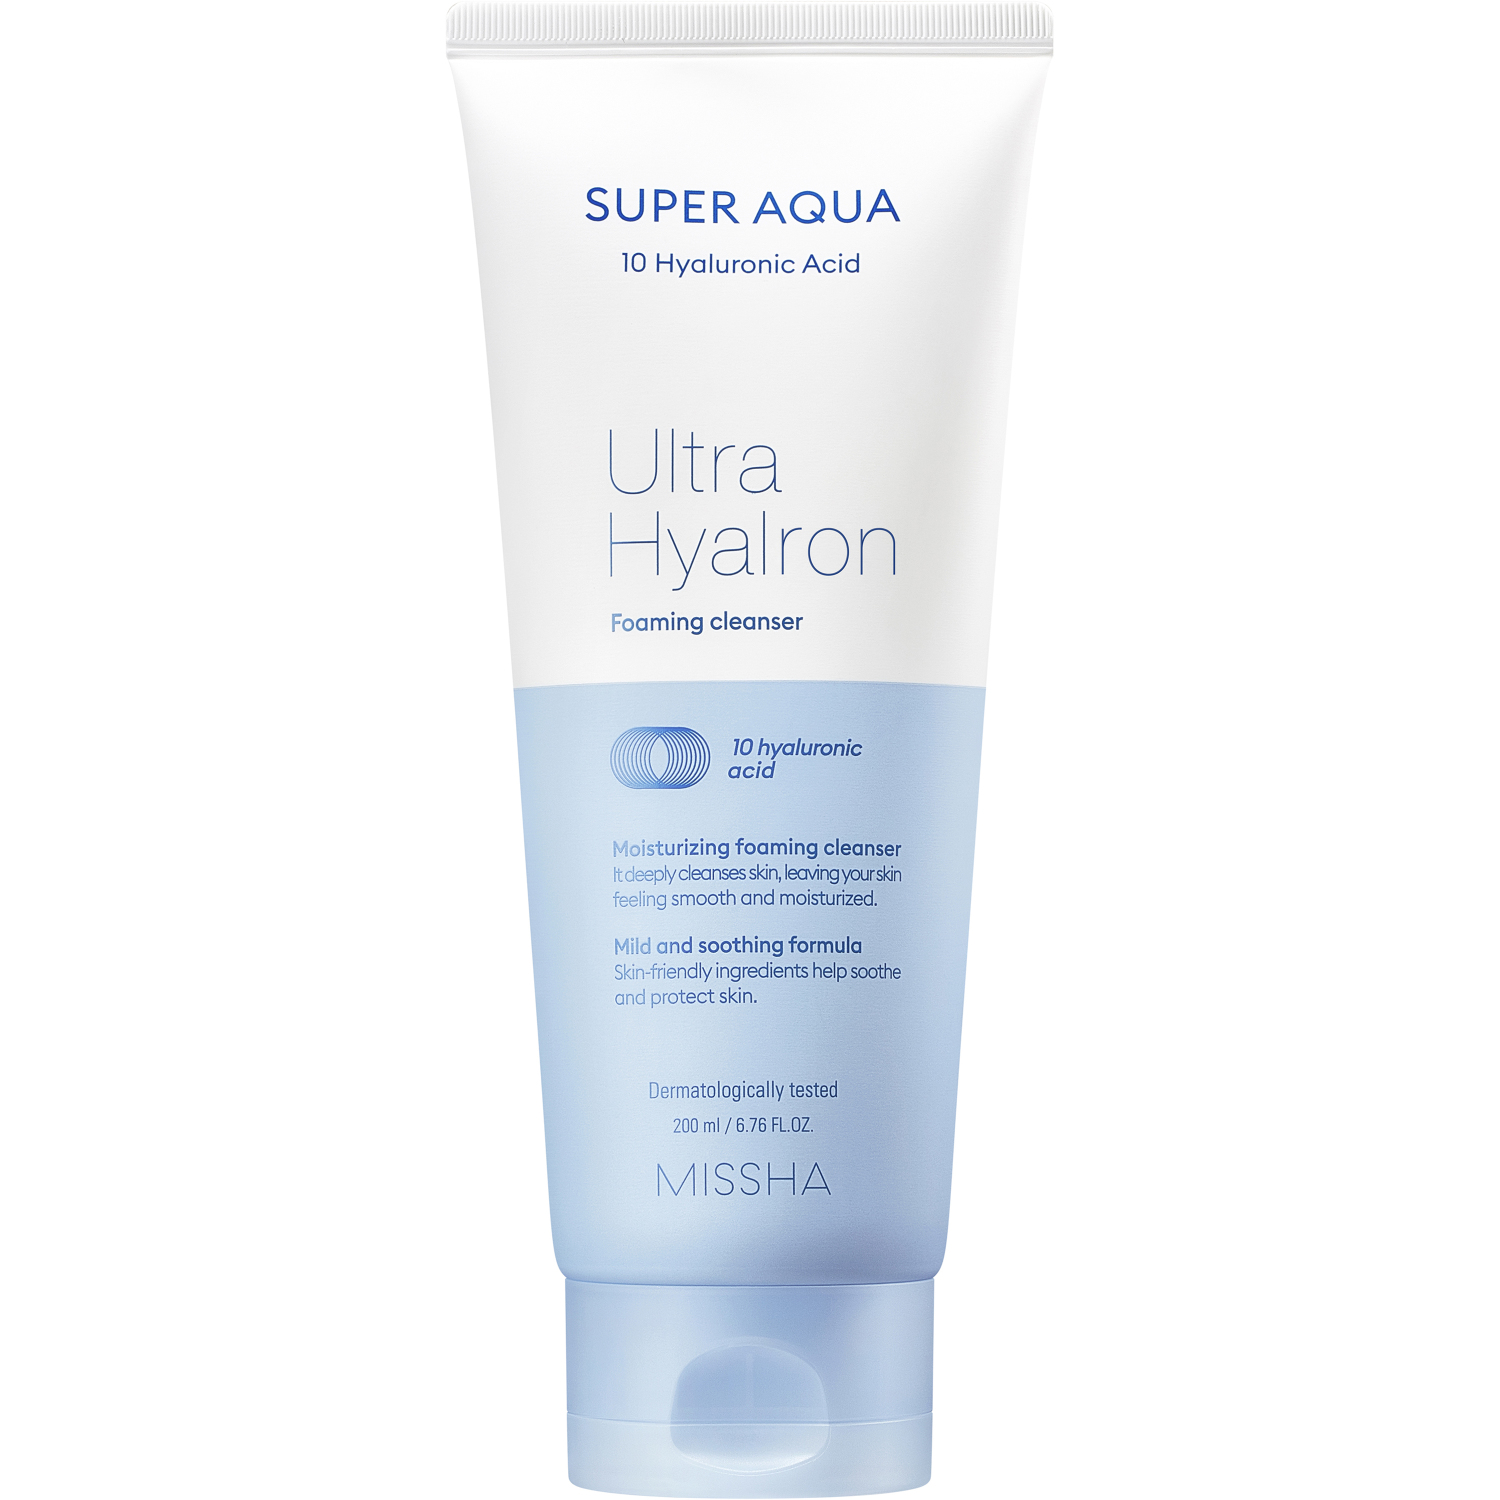 Пенка Missha Super Aqua Ultra Hyalron для умывания и снятия макияжа, 200 мл мусс для умывания missha пенка super aqua ultra hyalron для умывания и снятия макияжа